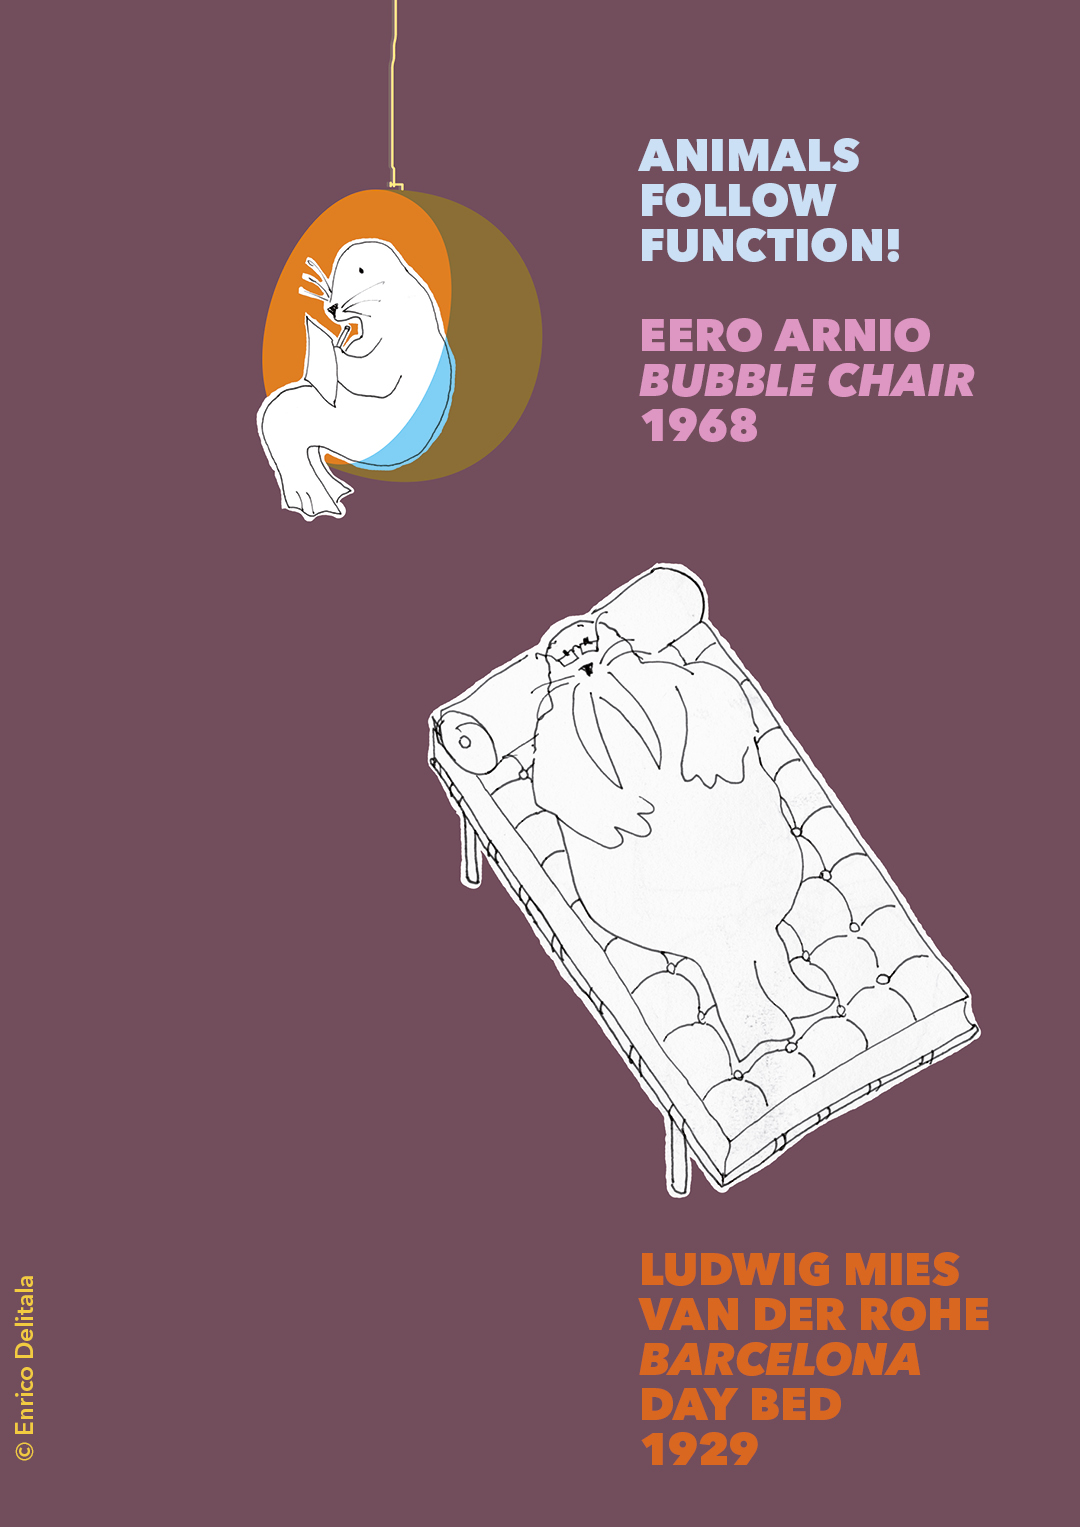 Foca + tricheco: Enrico Delitala illustrator animals follow function form follows function Mies van der Rohe Eero Aarnio Bubble chair Barcelona day bed